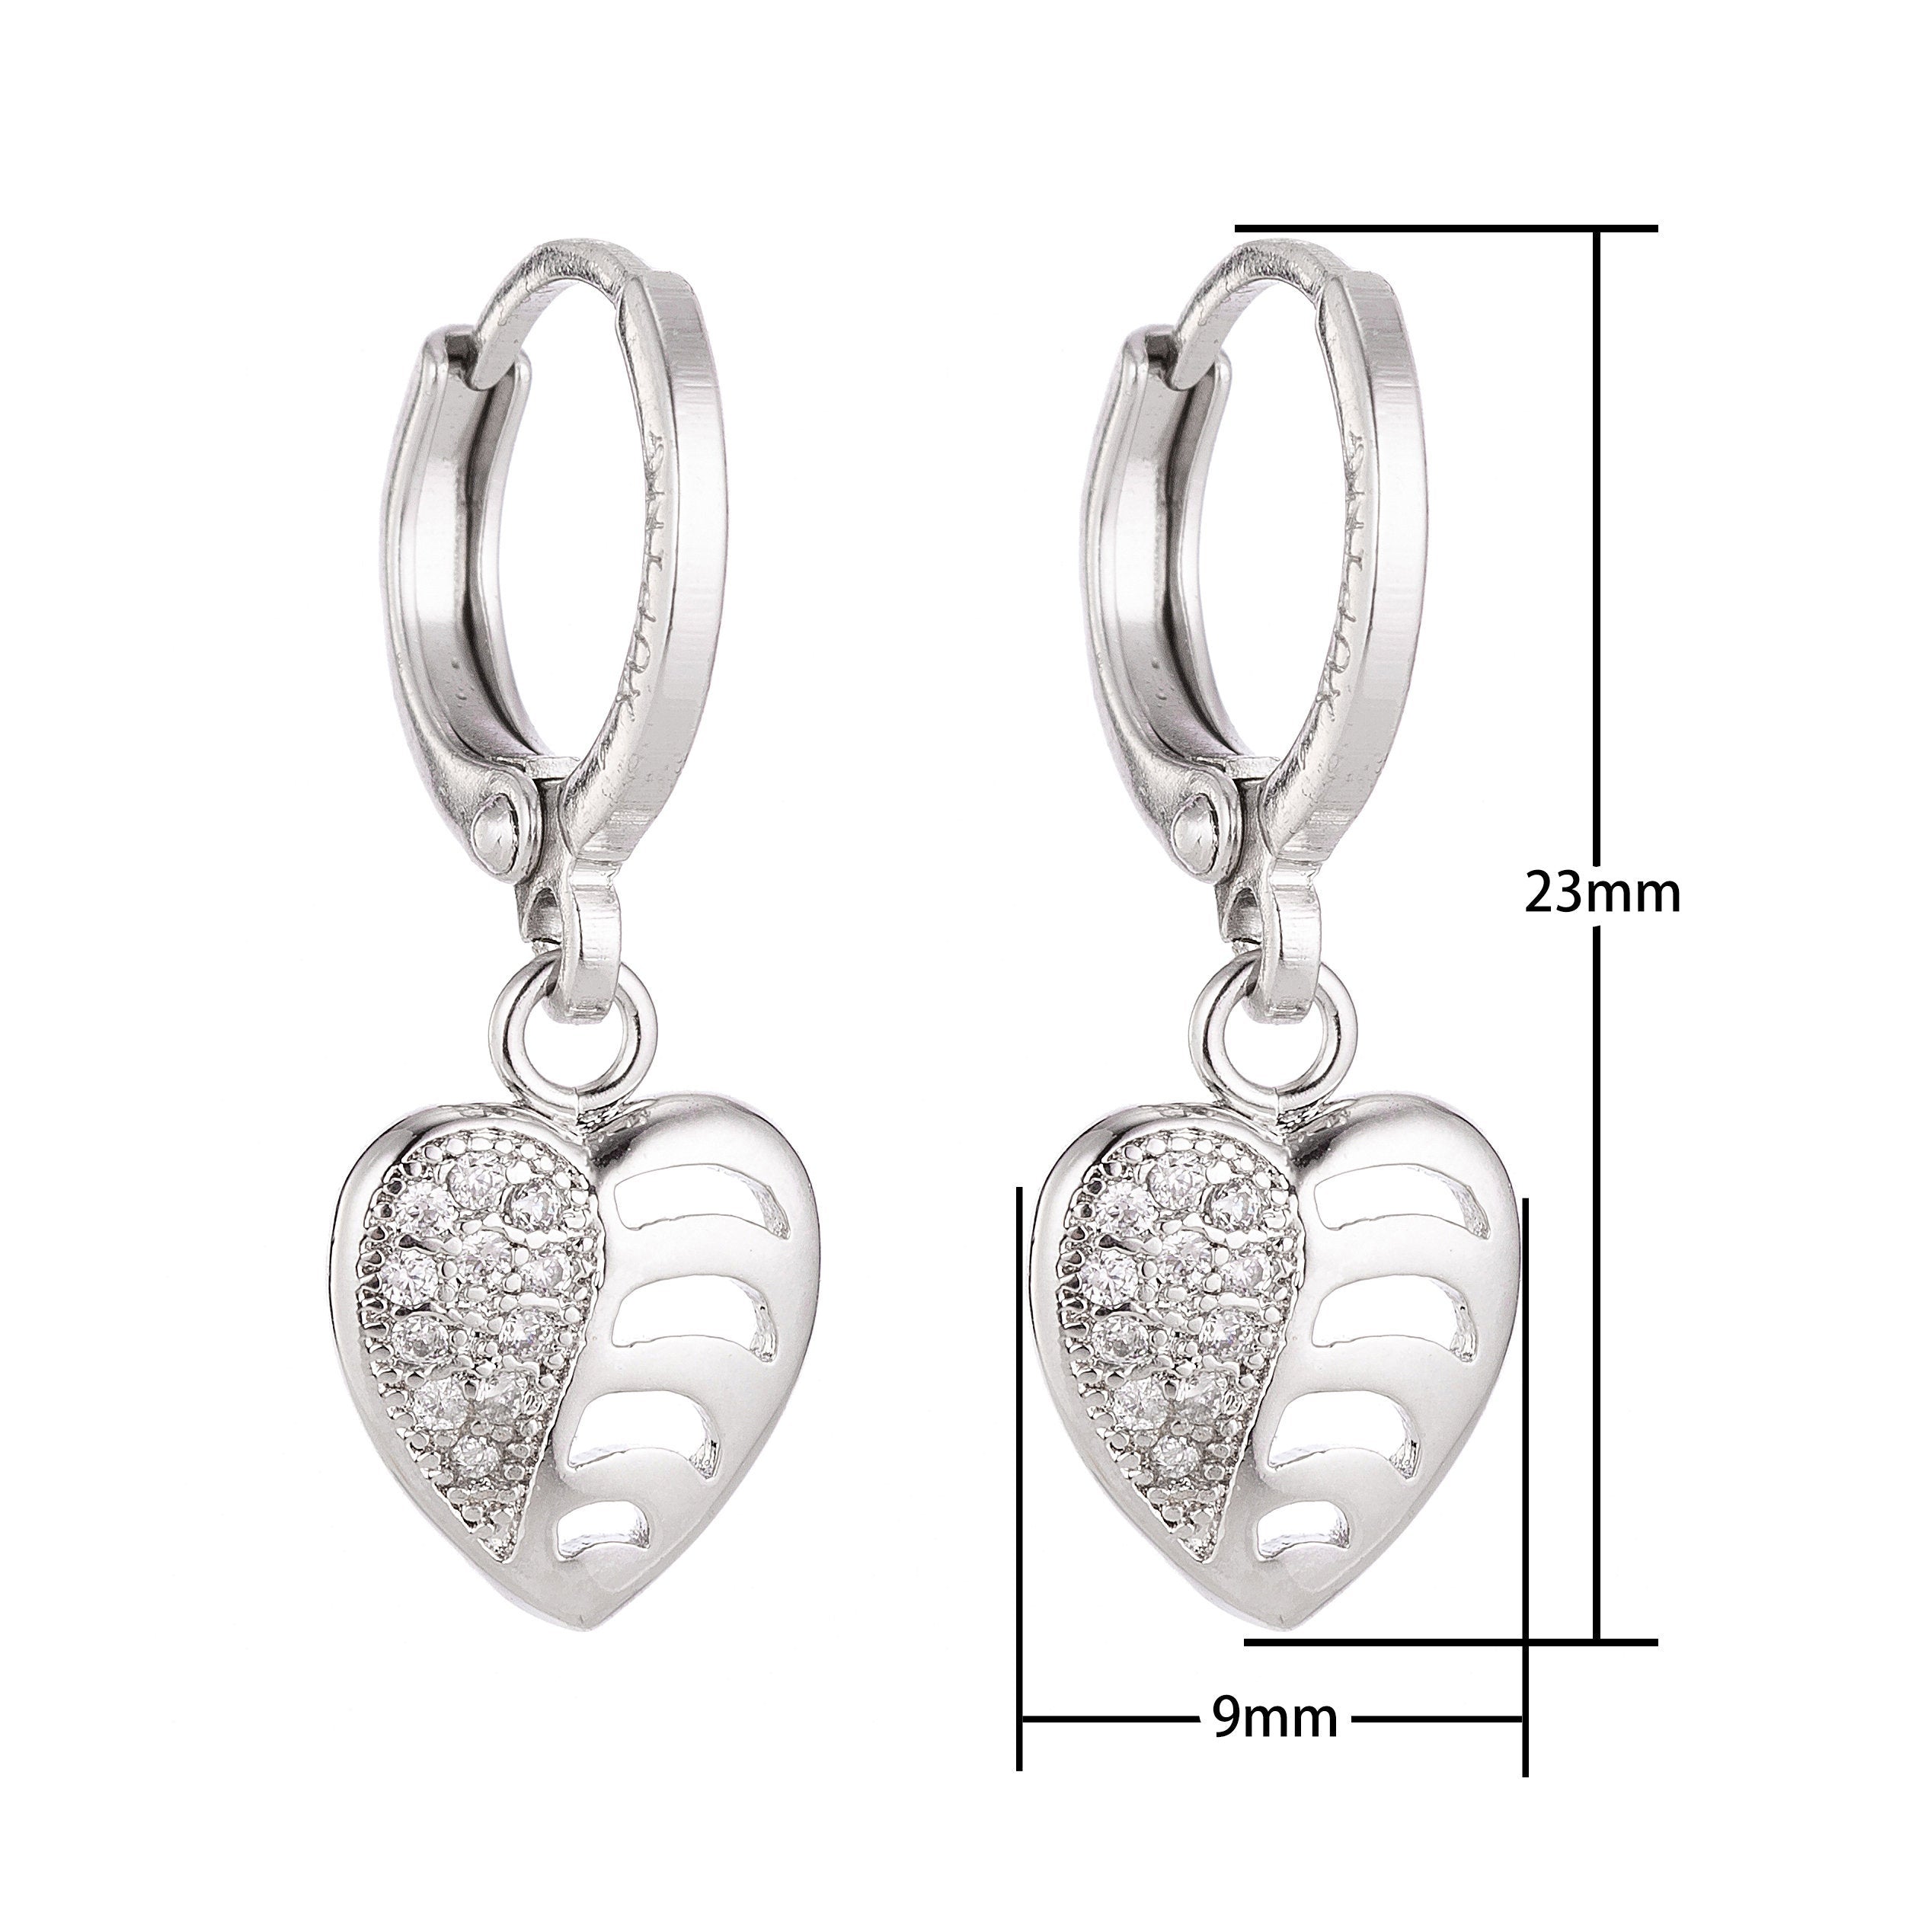 Silver Heart Dangle Huggies Earring, Cubic Zirconia Jewel, Silver Plated Jewelry, Heart Earrings, Patterned Earrings, Pretty Earrings - DLUXCA